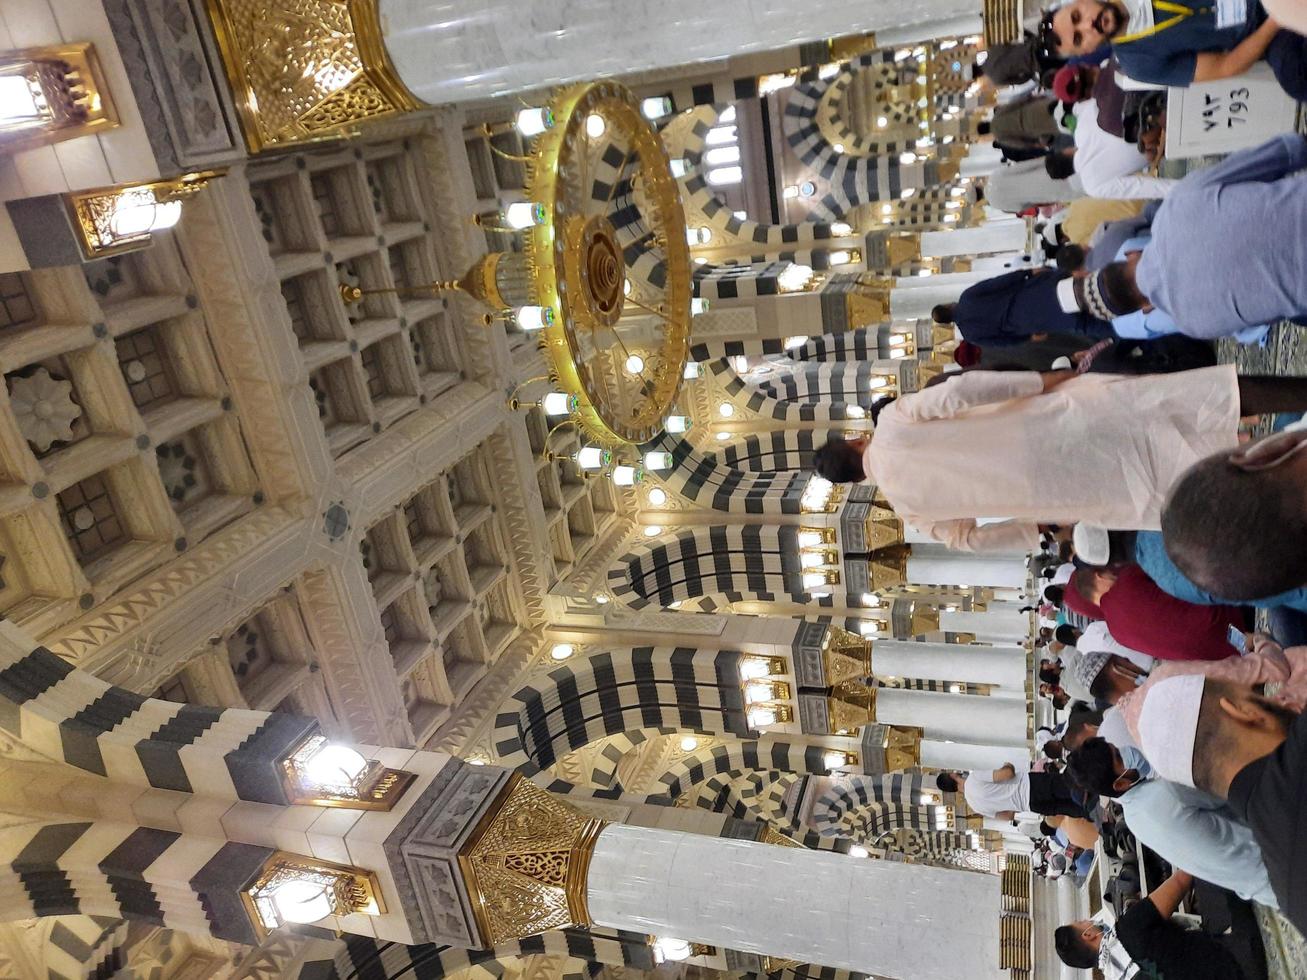 madinah, arabia saudita, dicembre 2021 - i visitatori di tutto il mondo sono impegnati a ricordare allah in diverse parti della moschea dei profeti madinah. foto